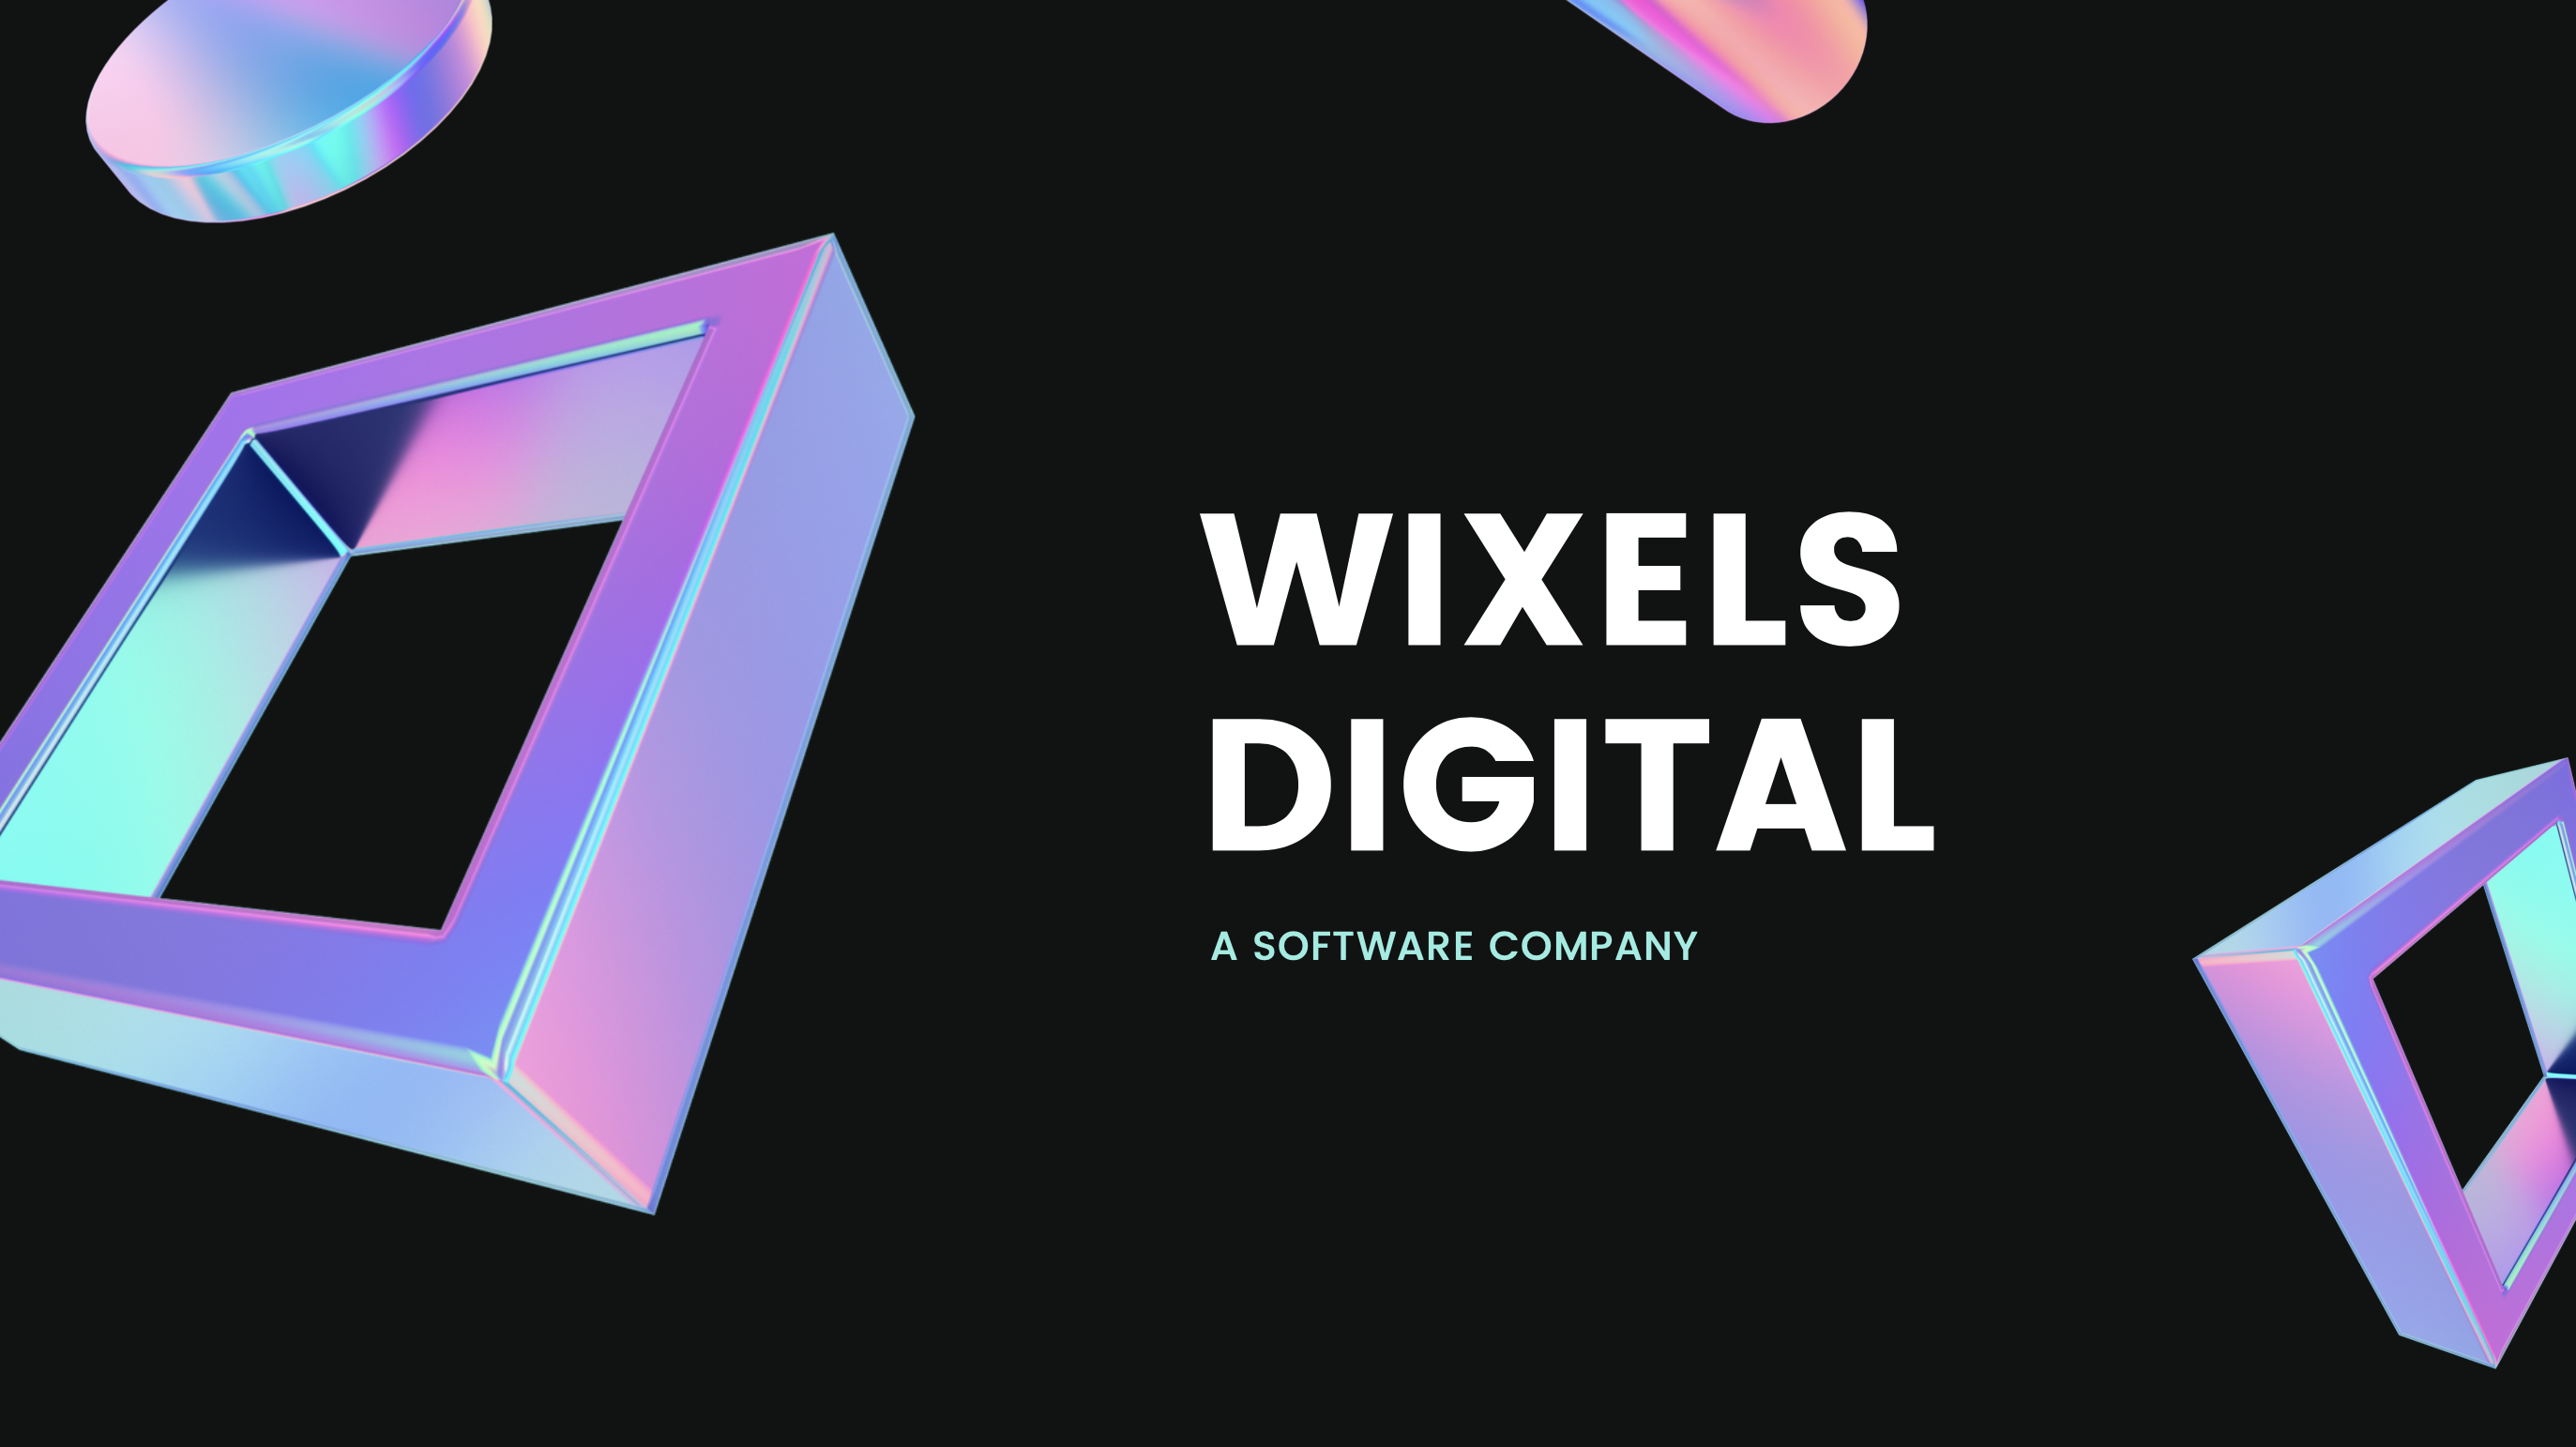 Wixels